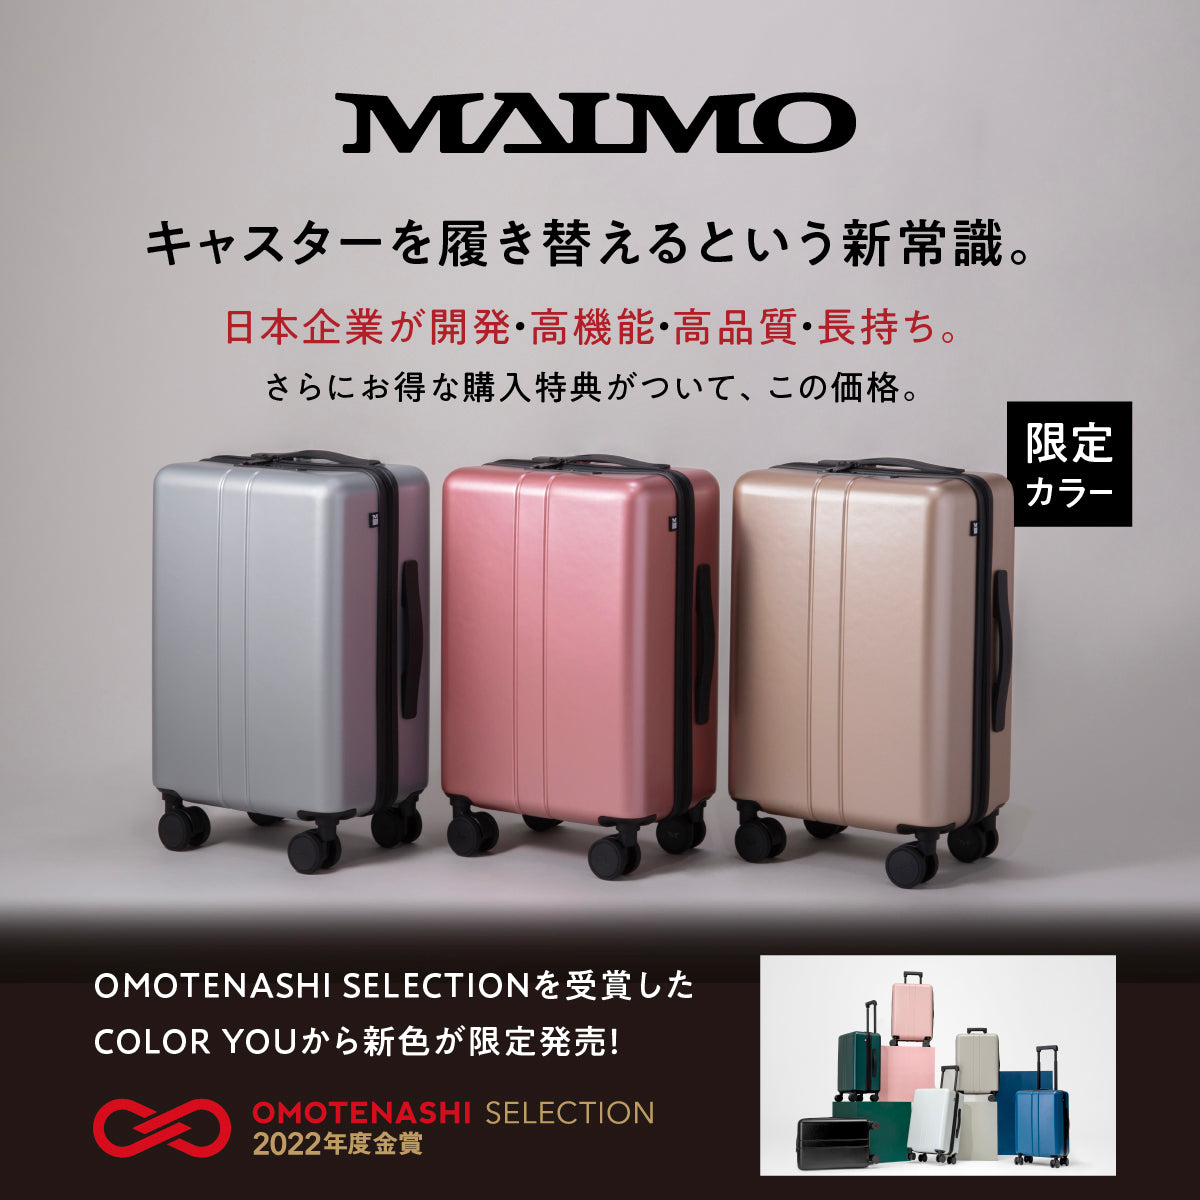 COLOR YOU 【限定色】シャンパンゴールド Sサイズ – MAIMO公式 